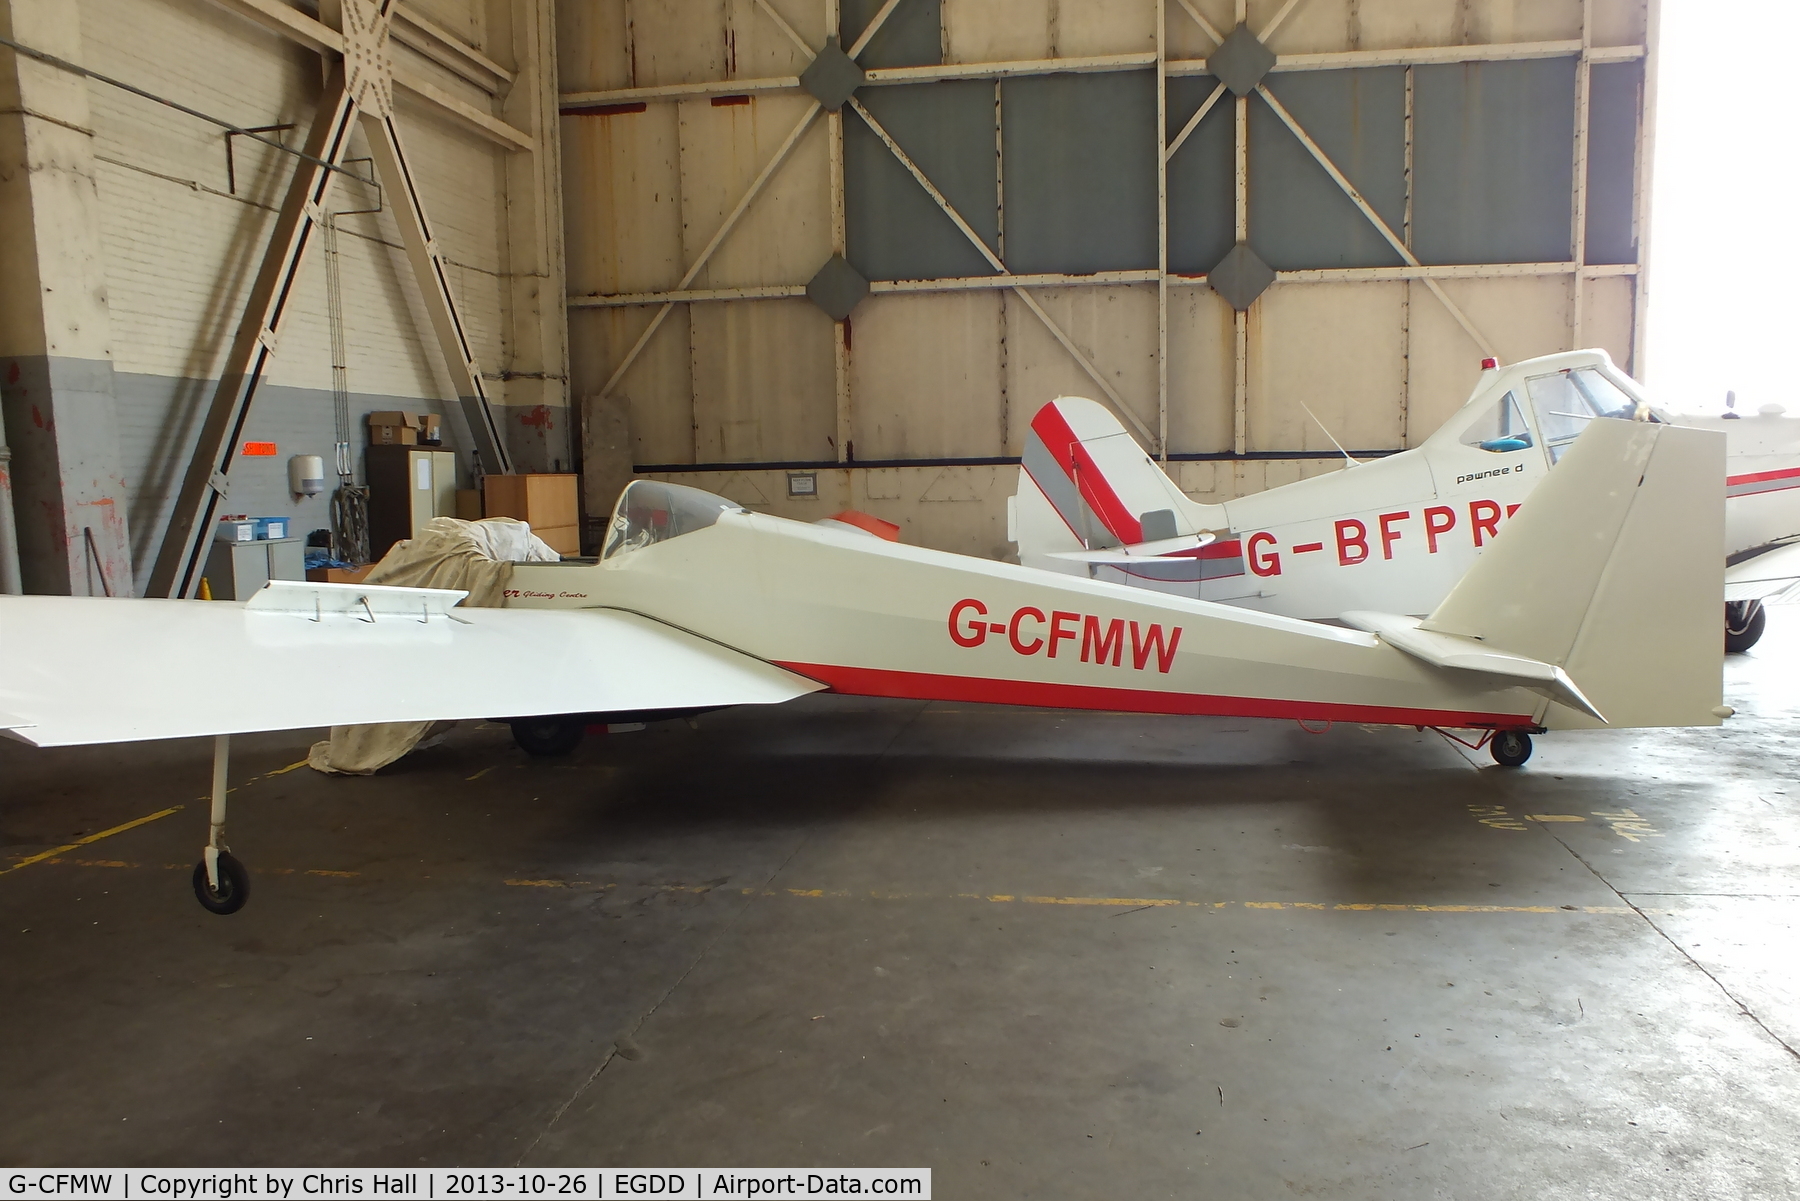 G-CFMW, 1985 Scheibe SF-25C Falke C/N 44378, Windrushers Gliding Club